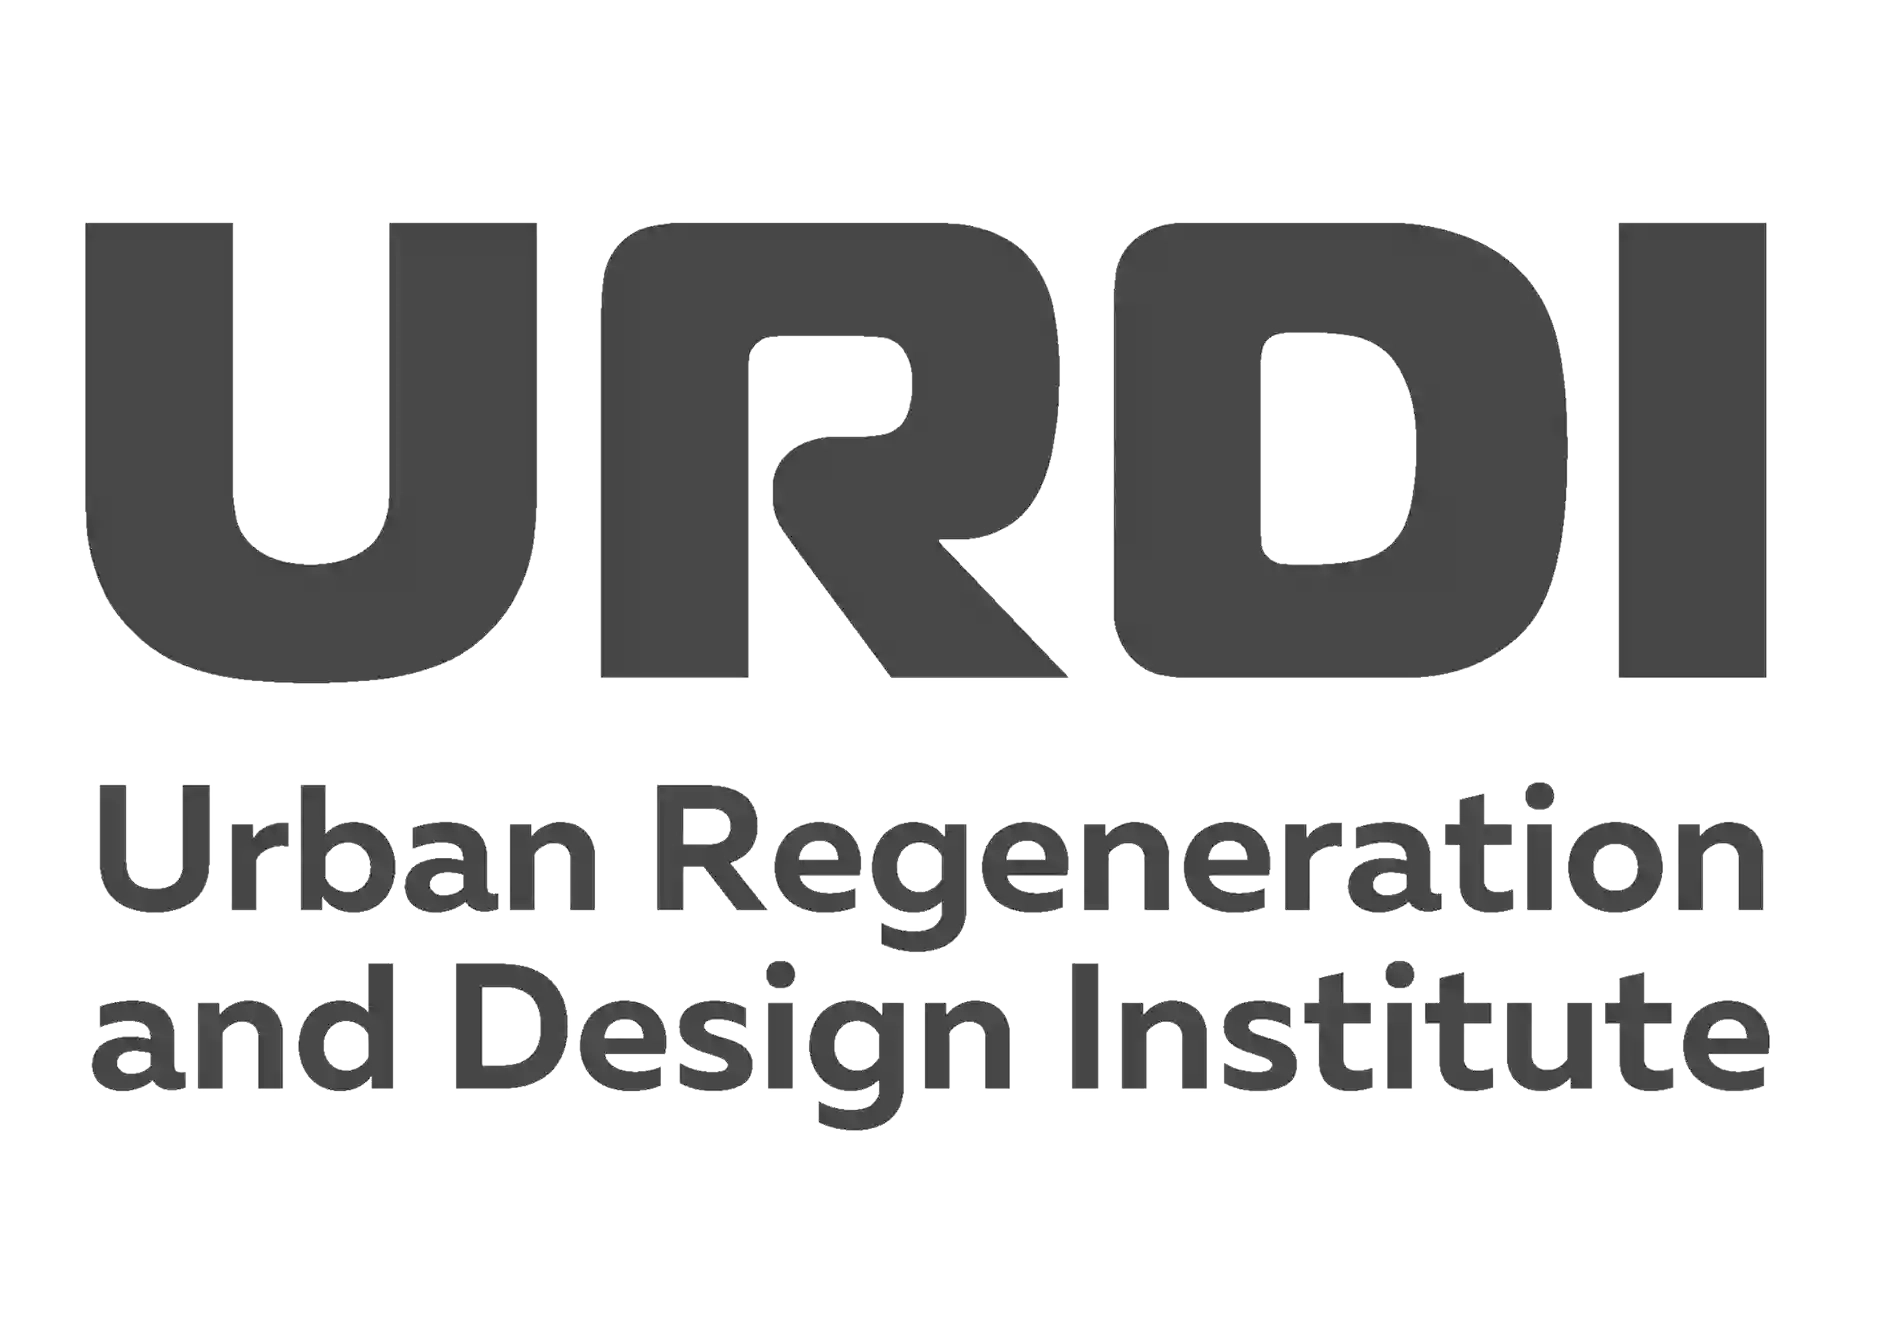 Urban Regeneration & Design Institute